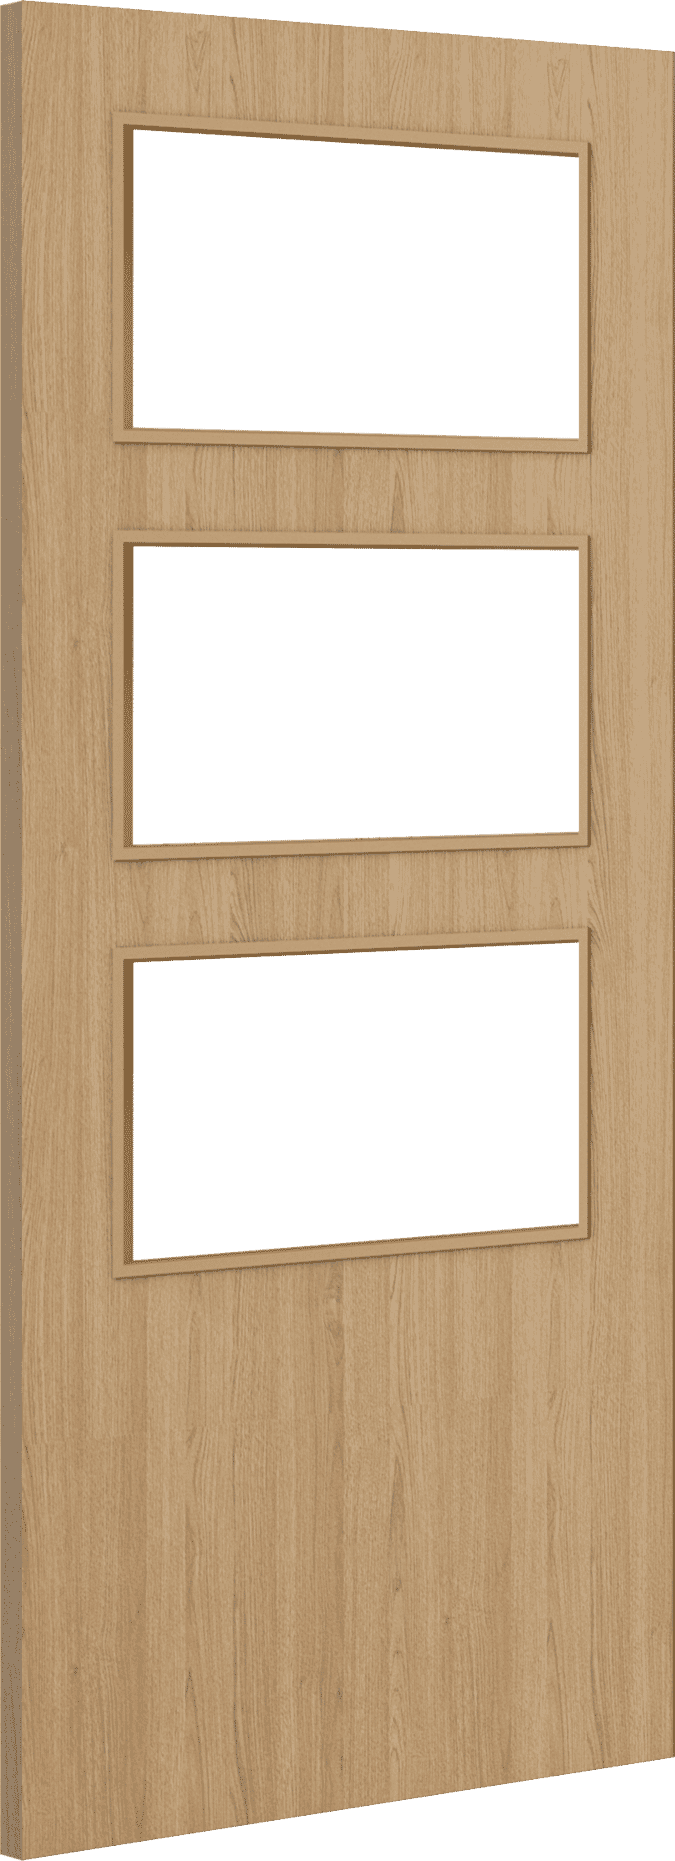 1981mm x 686mm x 44mm (27") Architectural Oak 03 Clear Glazed - Prefinished FD30 Fire Door Blank